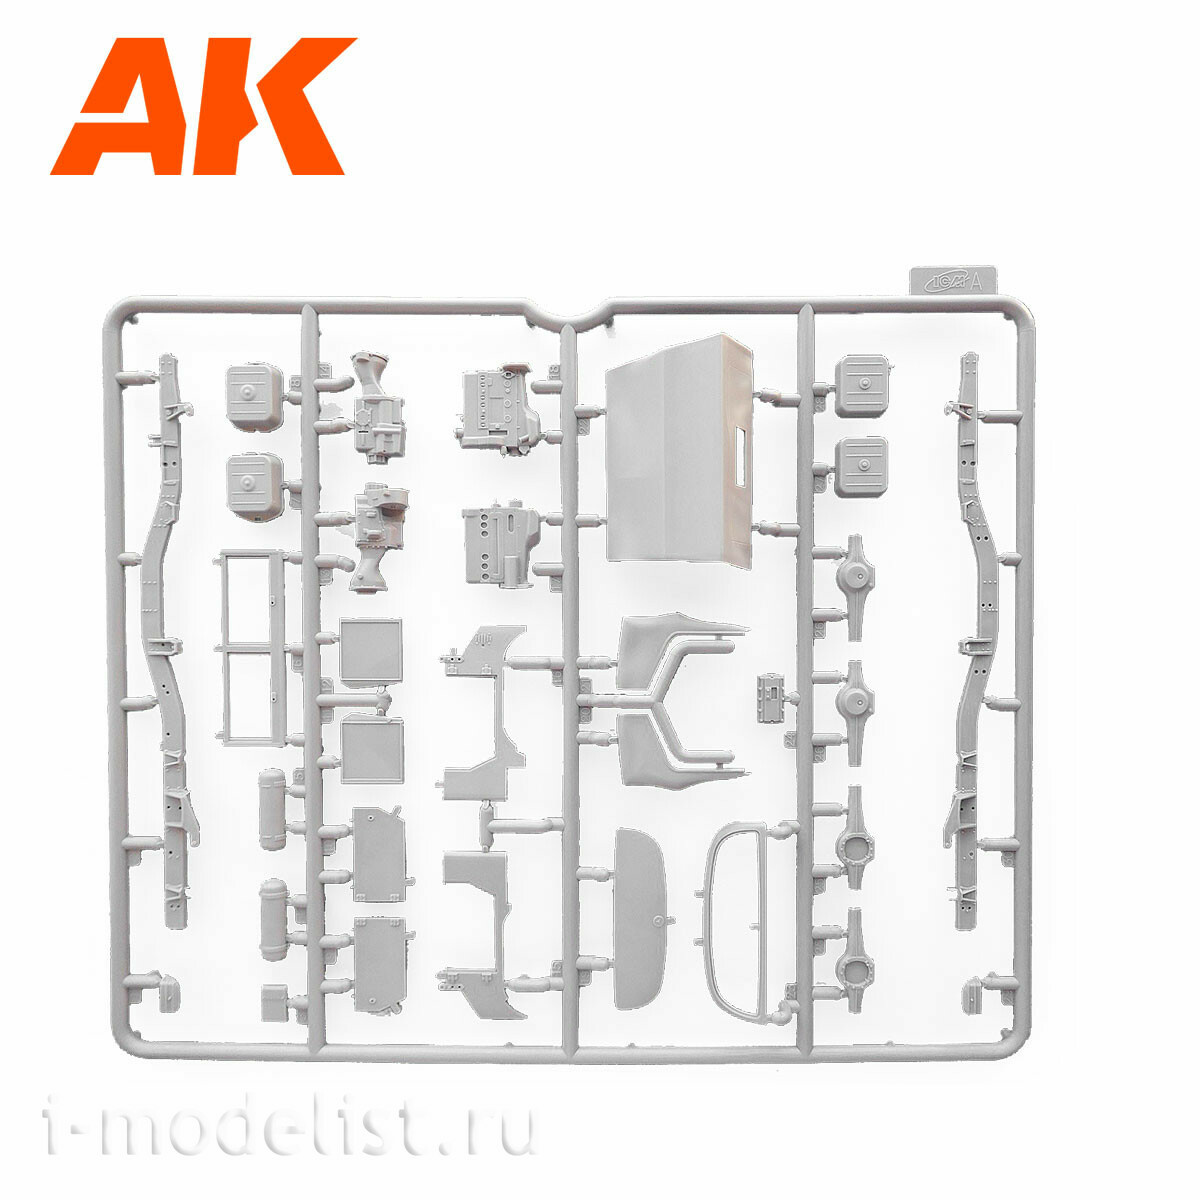 AK35505 AK Interactive 1/35 Внедорожник Unimog-S 404, Европа и Африка